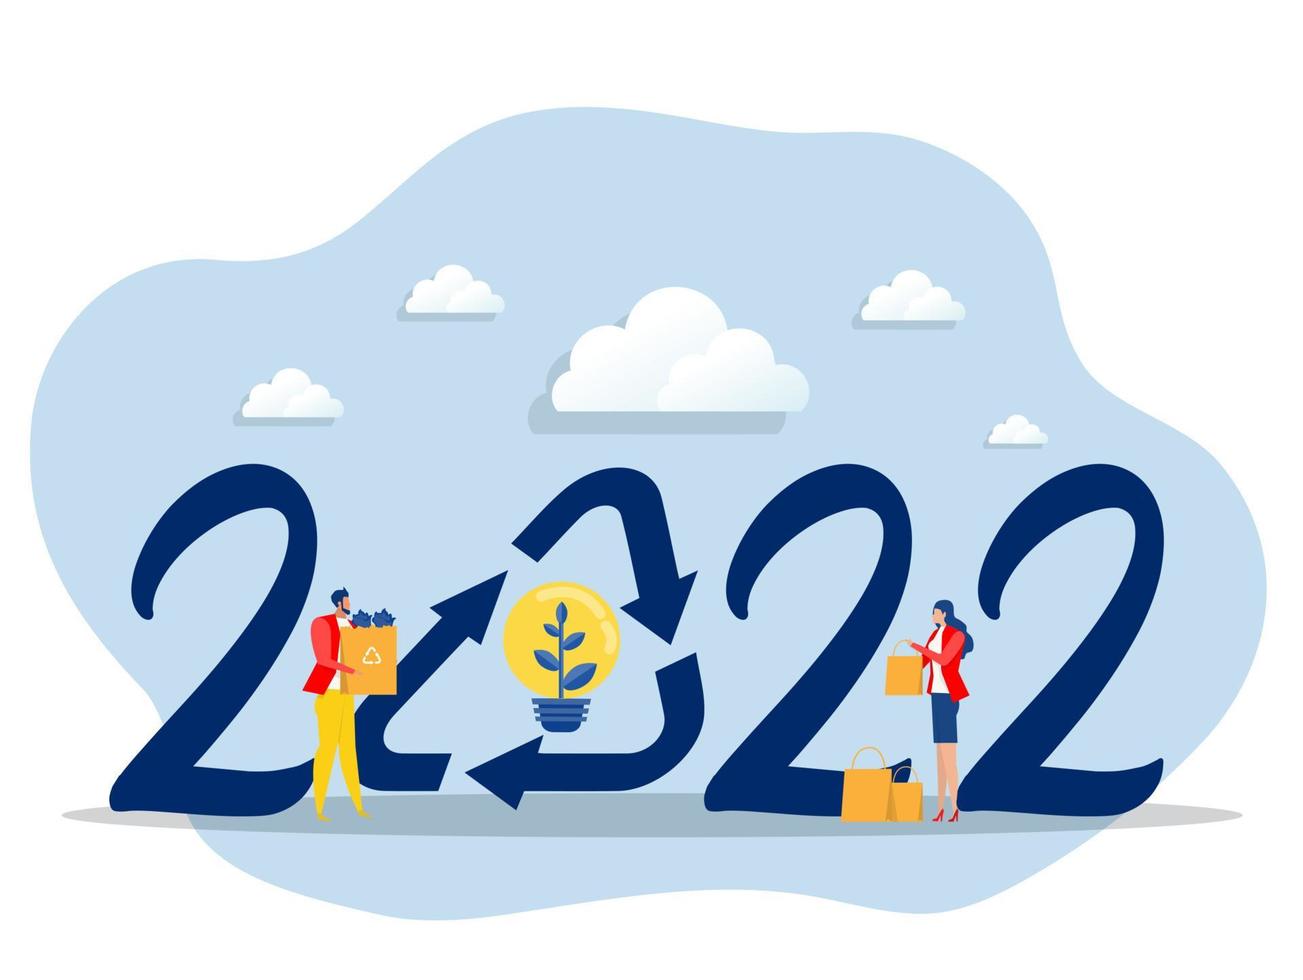 2022 ano novo e reciclagem, reduzindo a poluição e os resíduos, salvando a ilustração em vetor plana do conceito de terra.